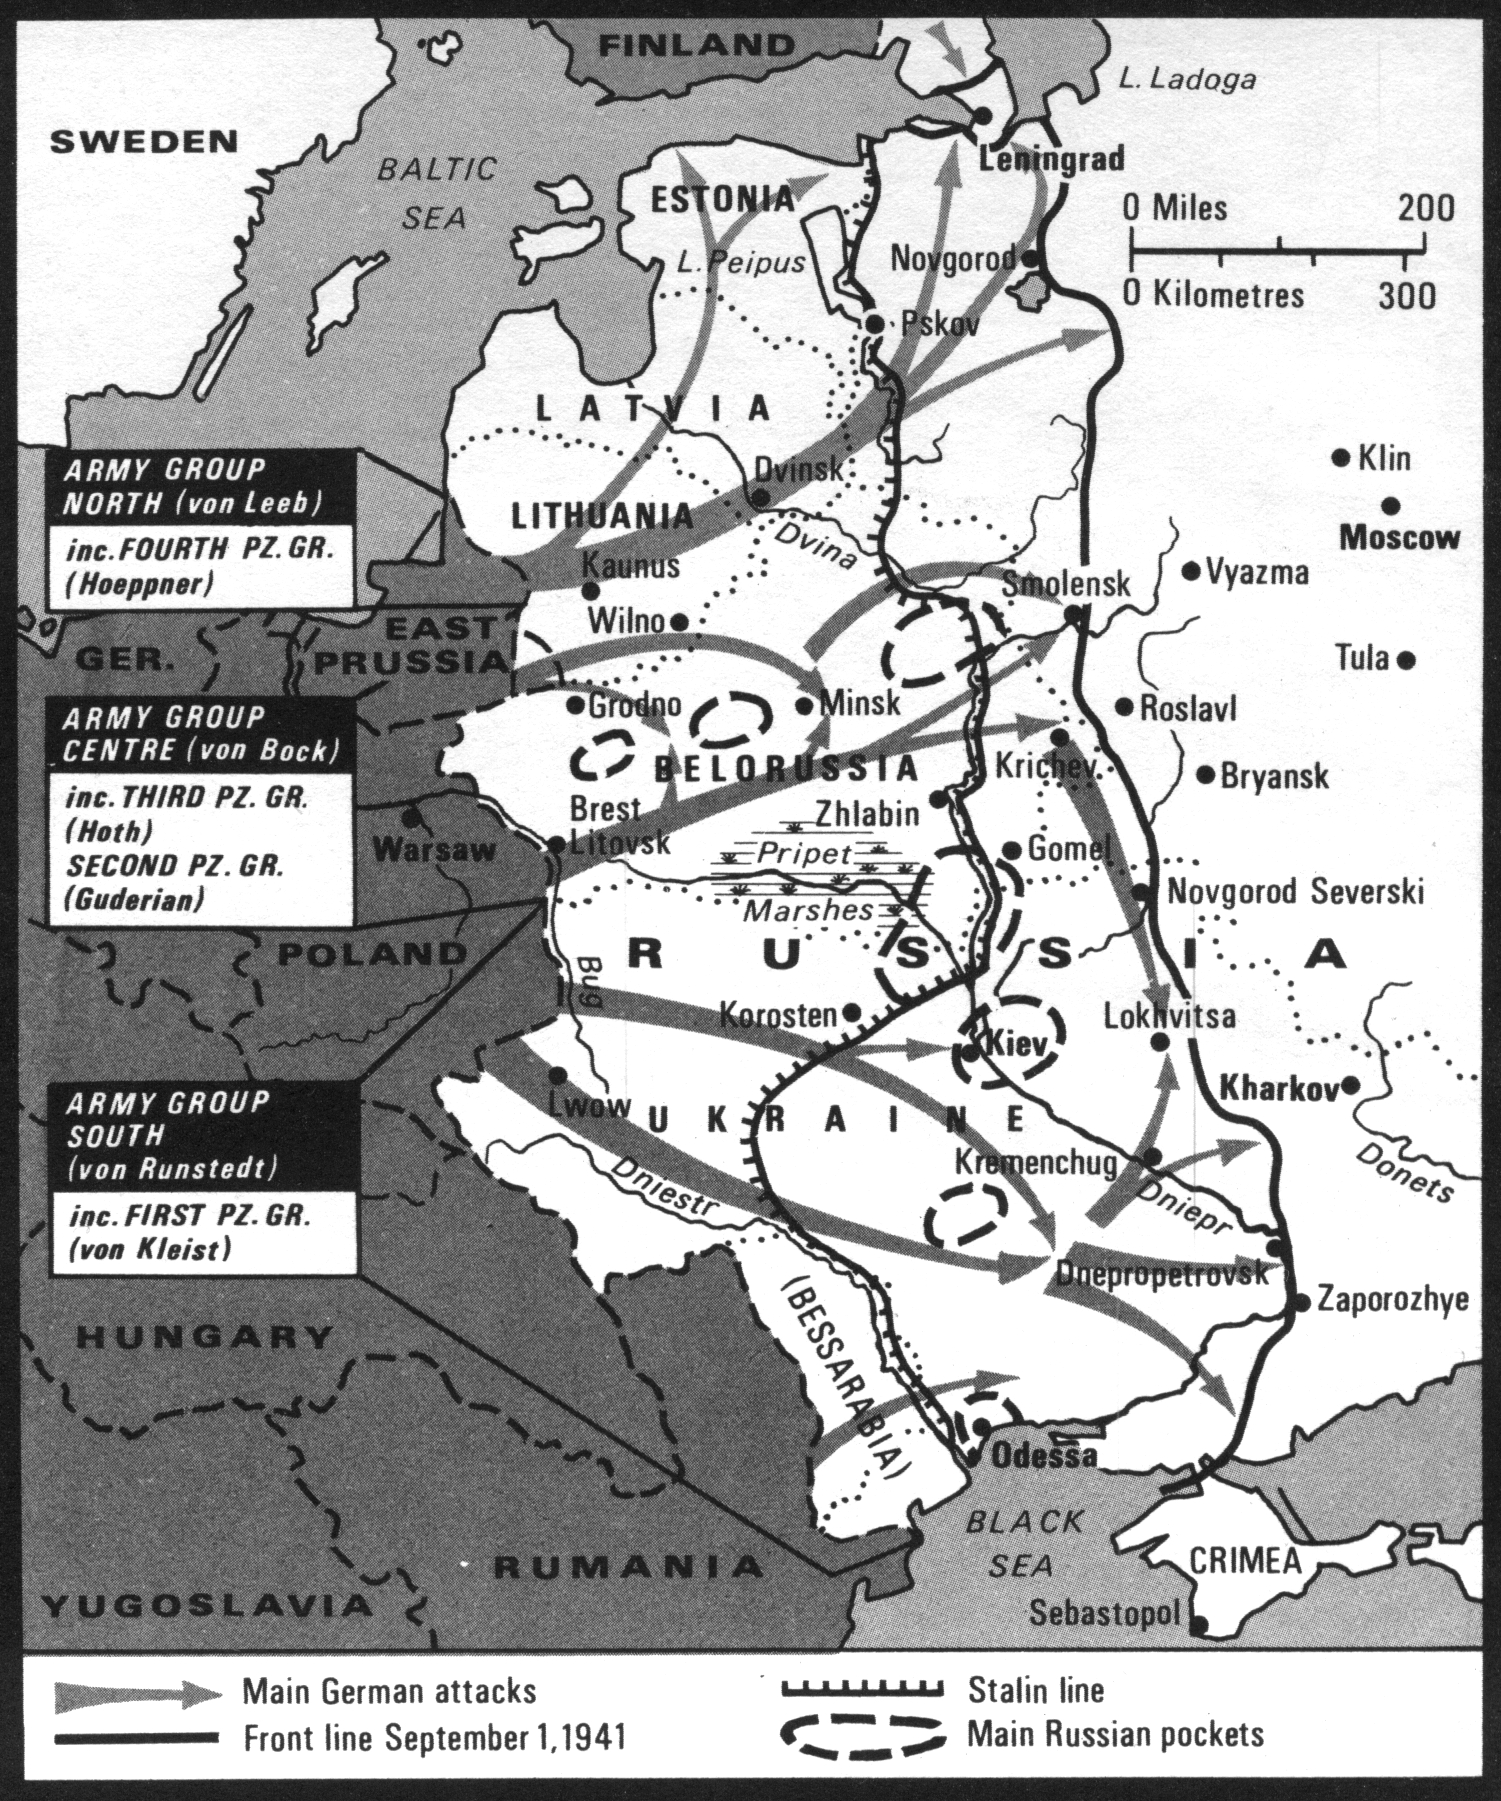 Нападение на советский союз 1941. Карта 2 мировой войны план Барбаросса. Операция Барбаросса лето 1941. Карта второй мировой войны план Барбаросса.